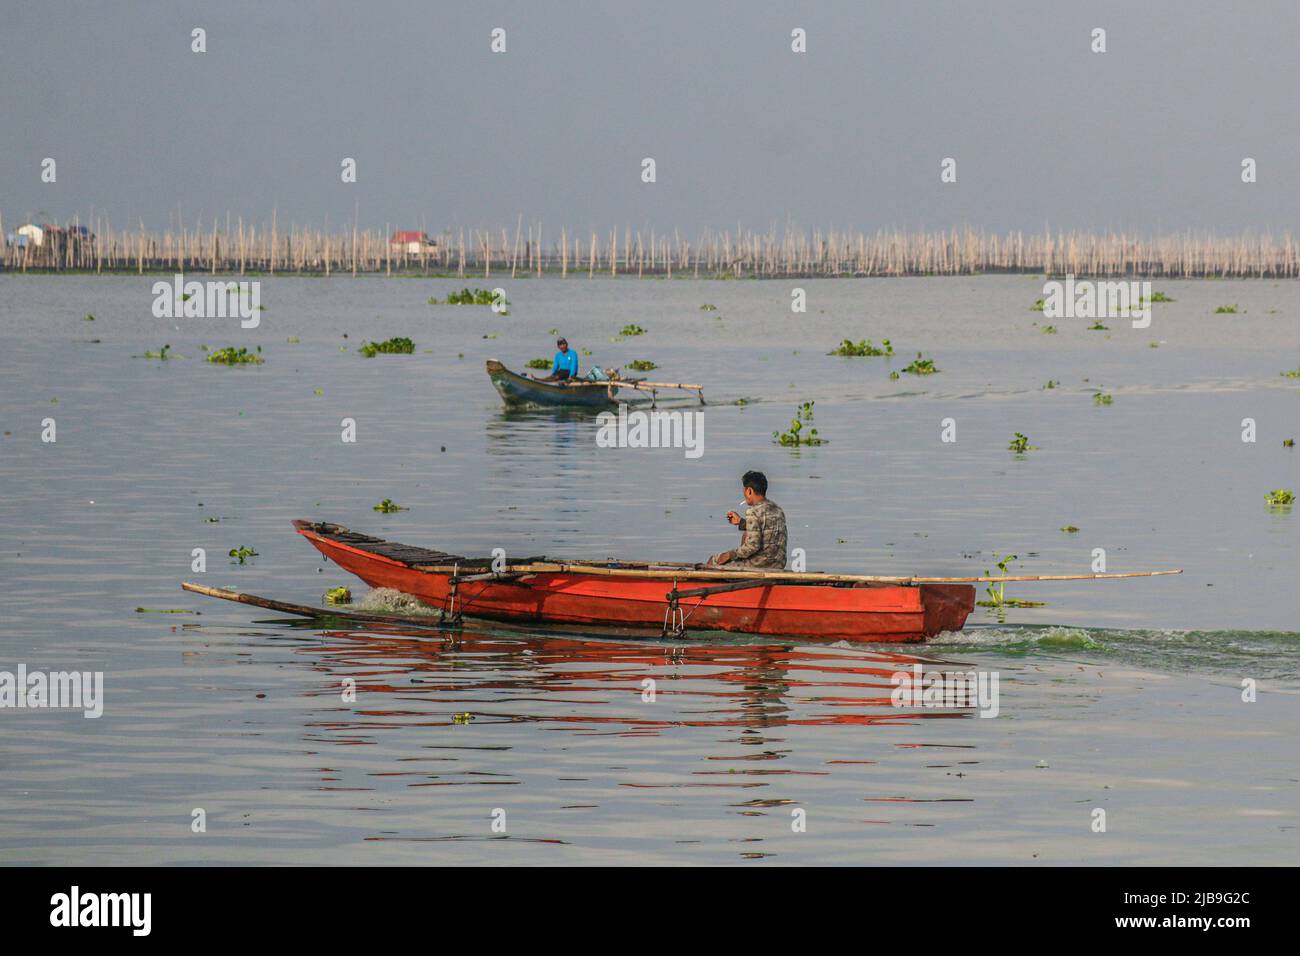 Binangonan, Philippines. 04th juin 2022. Plusieurs bateaux sont vus aviron dans le lac. Le lac Laguna est le plus grand lac des Philippines, d'une superficie de 900 kilomètres carrés ou équivalente à 90 000 hectares. Son eau s'écoule de la province de Laguna jusqu'à la province de Rizal, la partie sud de Luzon. Le lac fournit des ressources comme le transport, les loisirs, les moyens de subsistance et surtout de la nourriture pour les communautés environnantes. Le lac Laguna est classé comme eau douce de classe C, qui a la capacité de cultiver des poissons et d'autres ressources aquatiques. Un bassin versant près du Grand Manille cla Banque D'Images